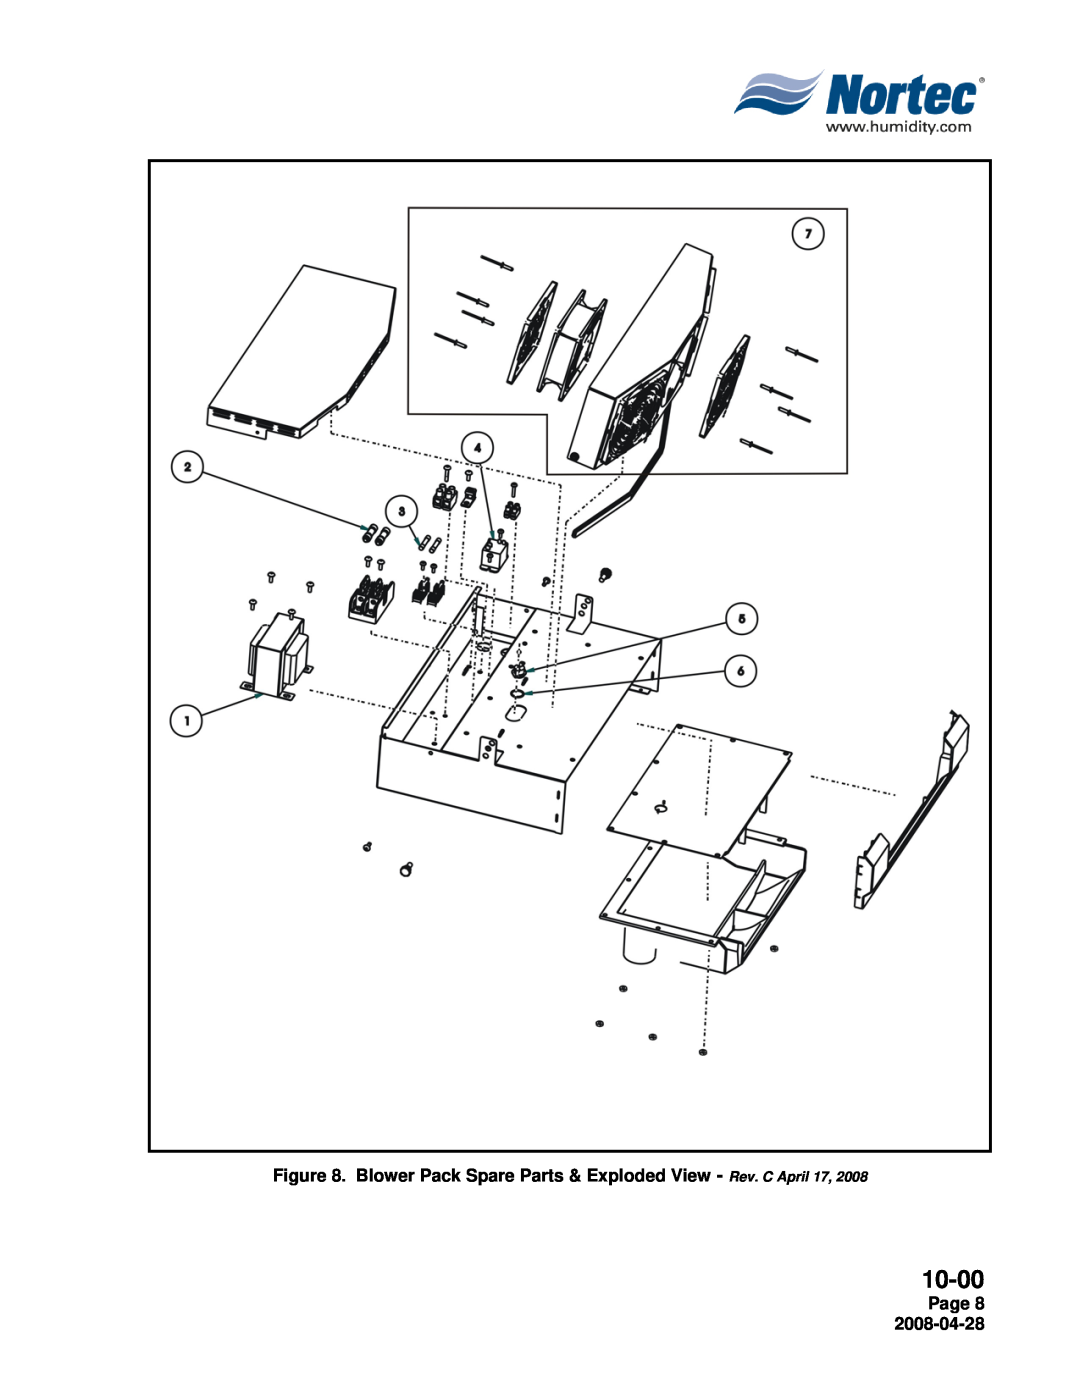 Nortec 380V installation manual 10-00, Page 